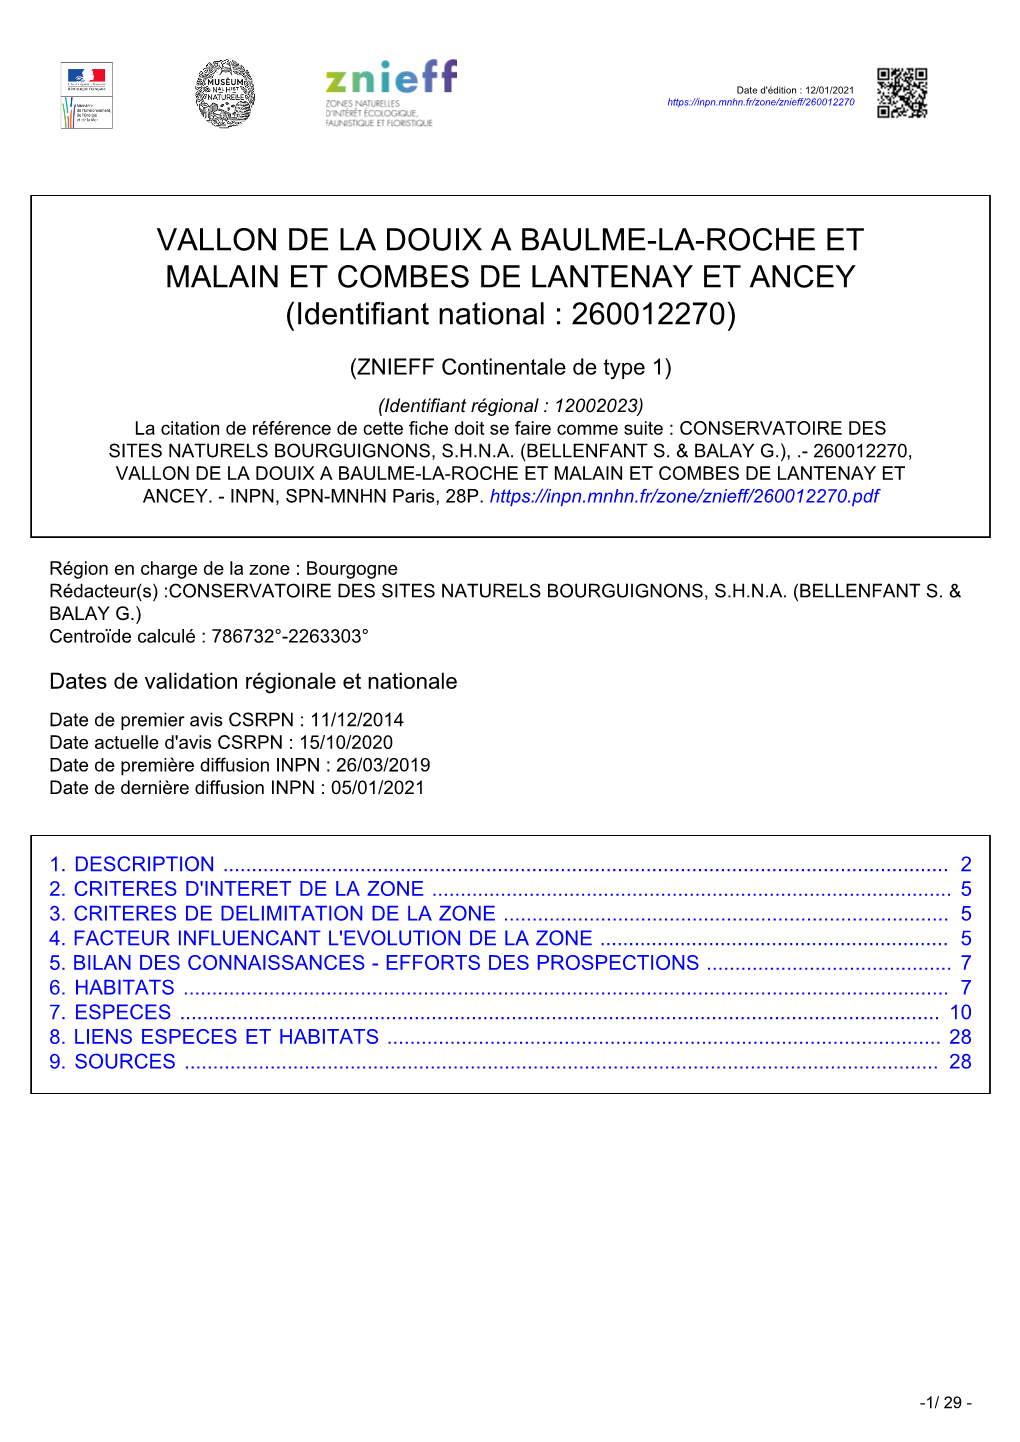 VALLON DE LA DOUIX a BAULME-LA-ROCHE ET MALAIN ET COMBES DE LANTENAY ET ANCEY (Identifiant National : 260012270)